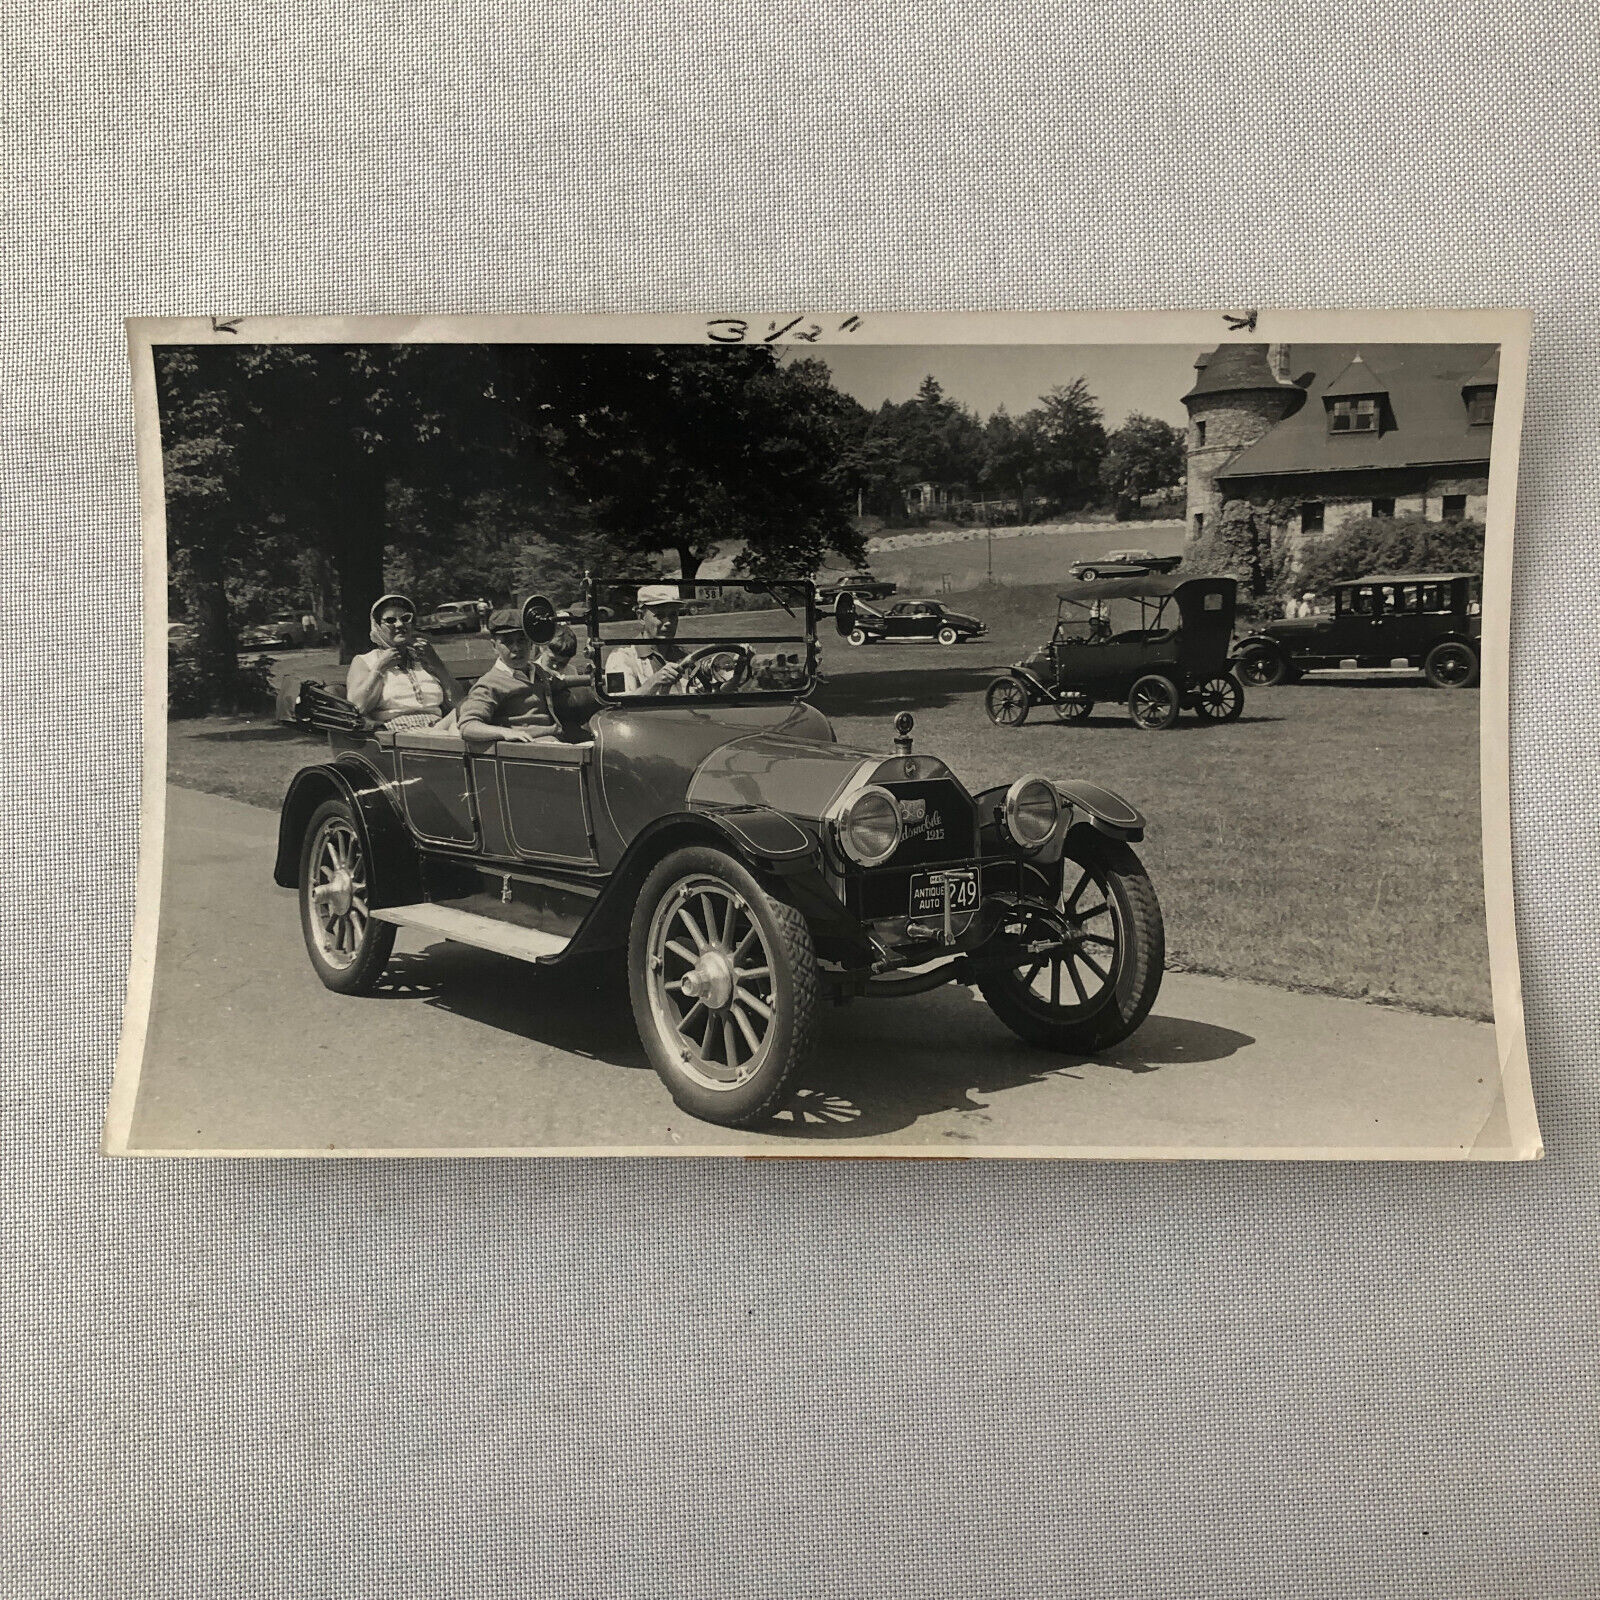 Vintage 1915 Oldsmobile 42 Automobile at 1958 Car Show Photo Photograph Print 